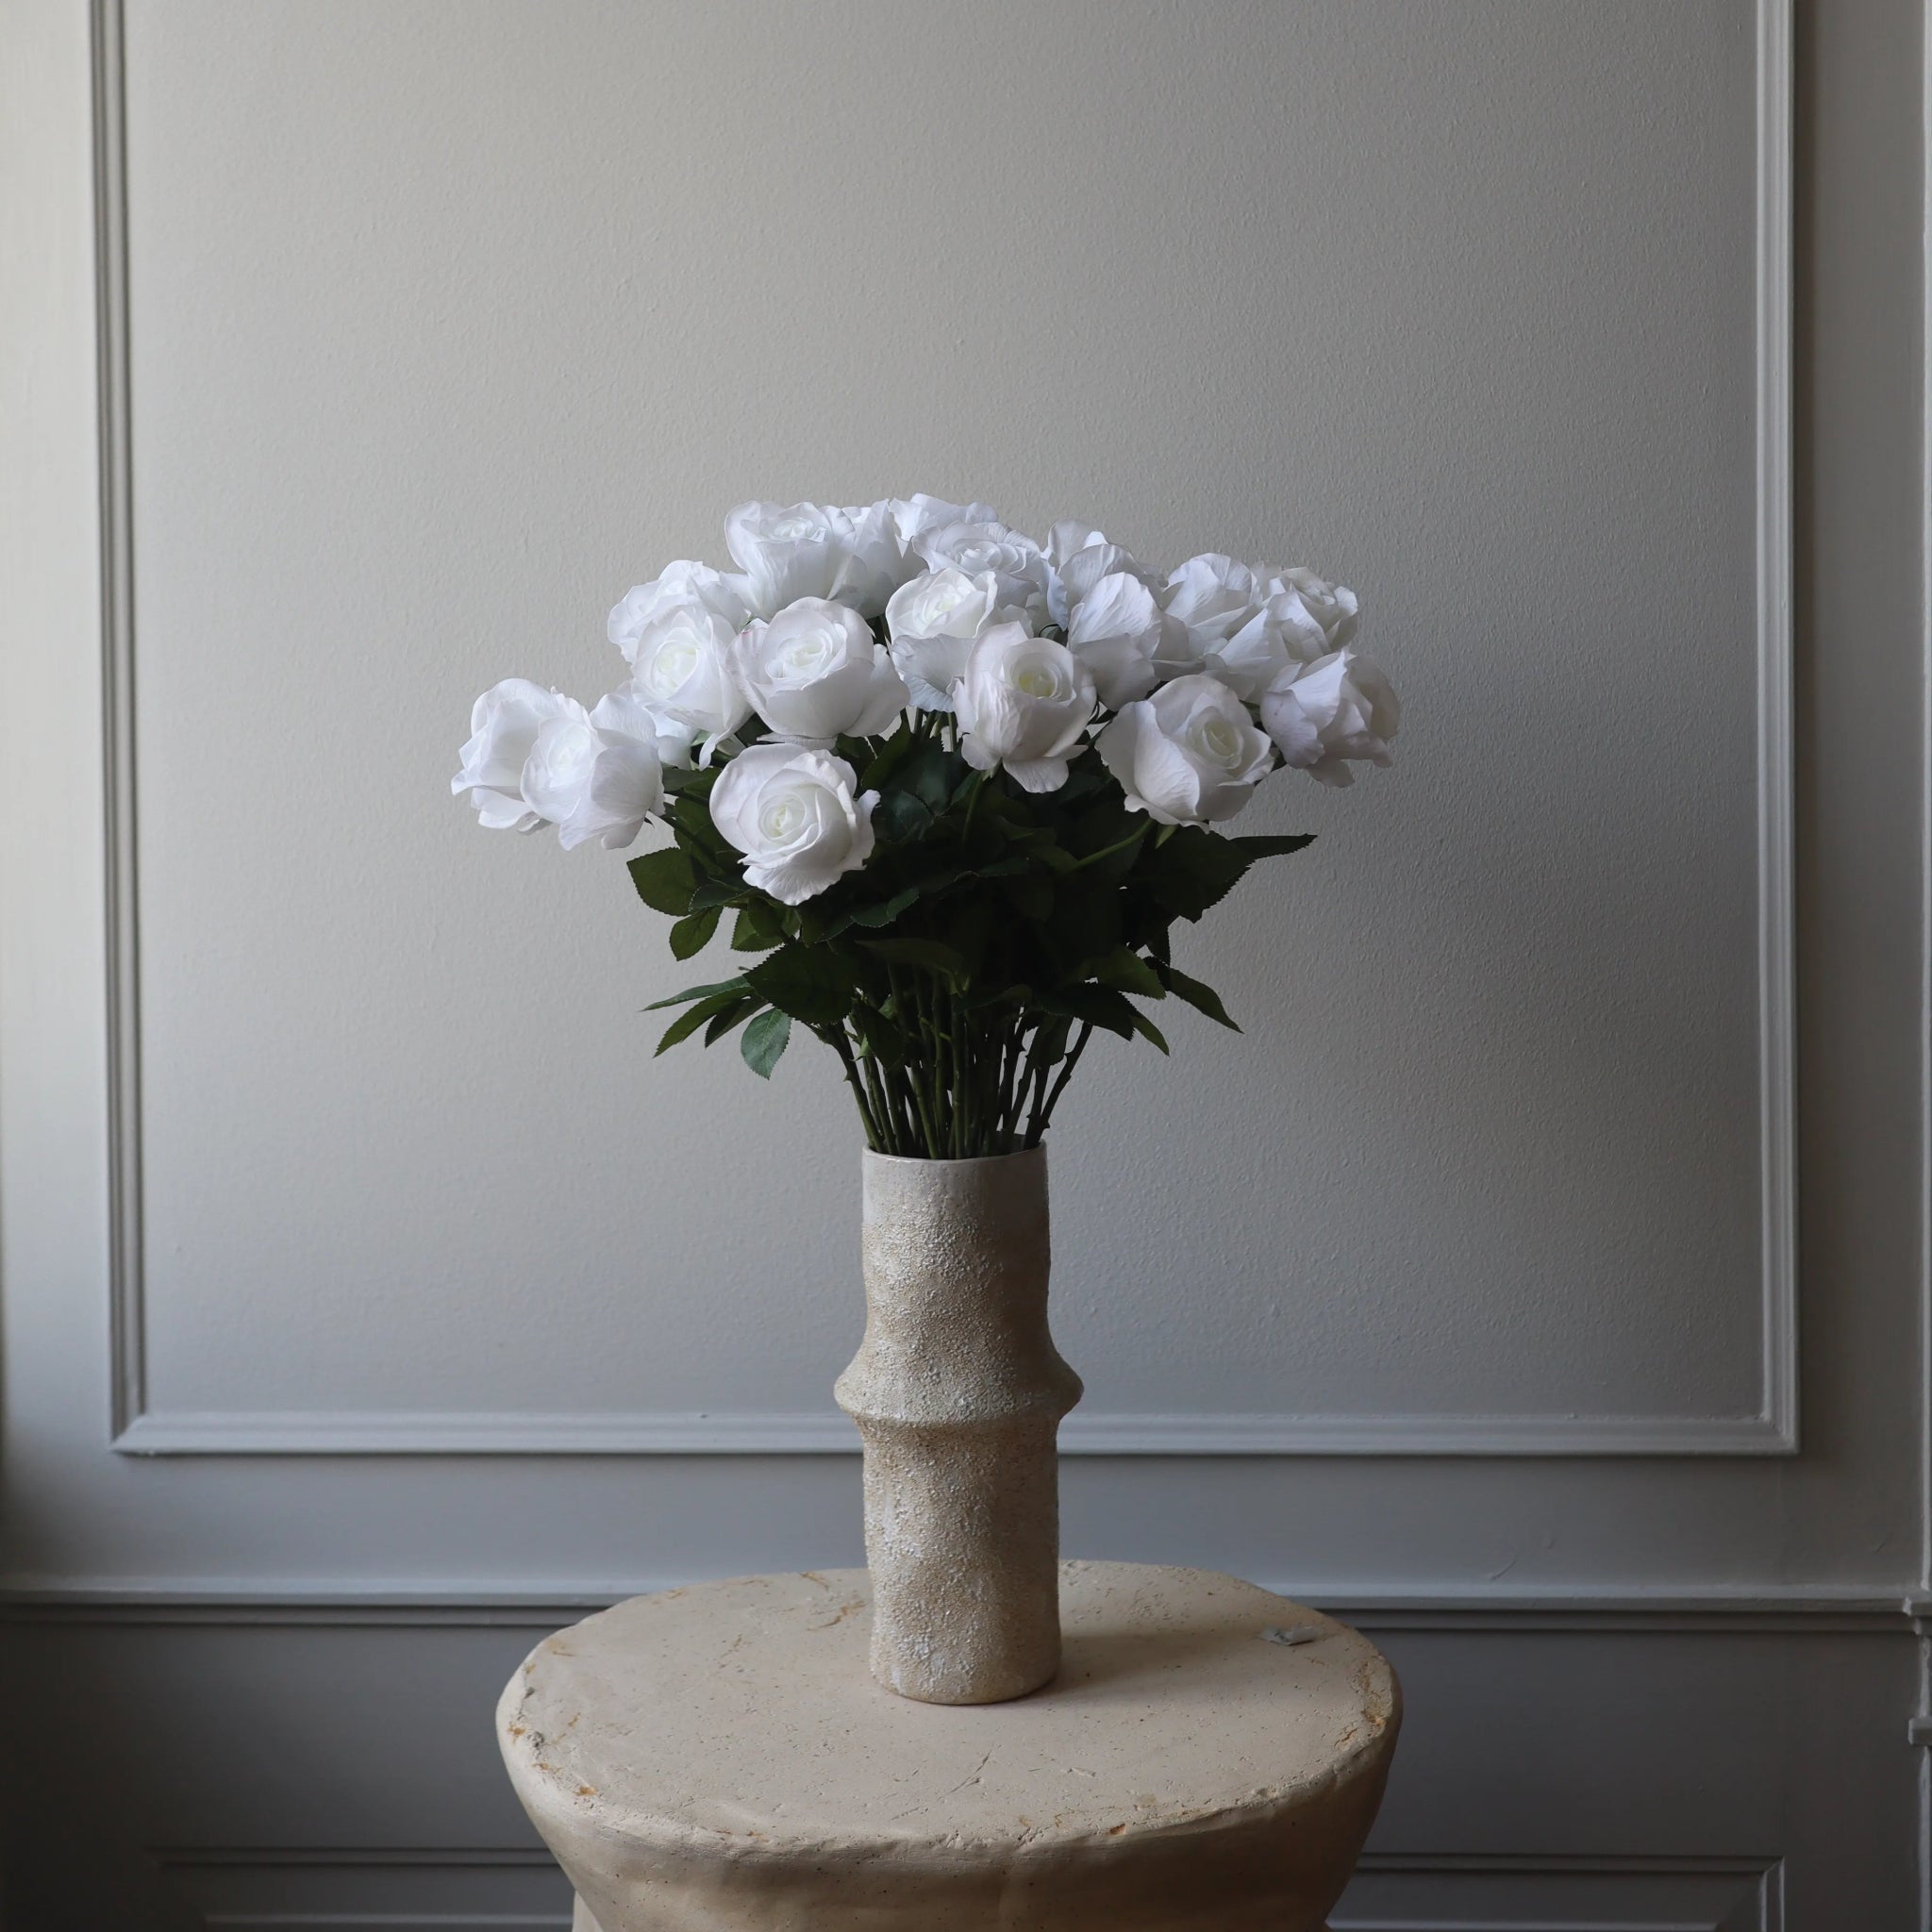 Premium Longstem Rose in White from Botané